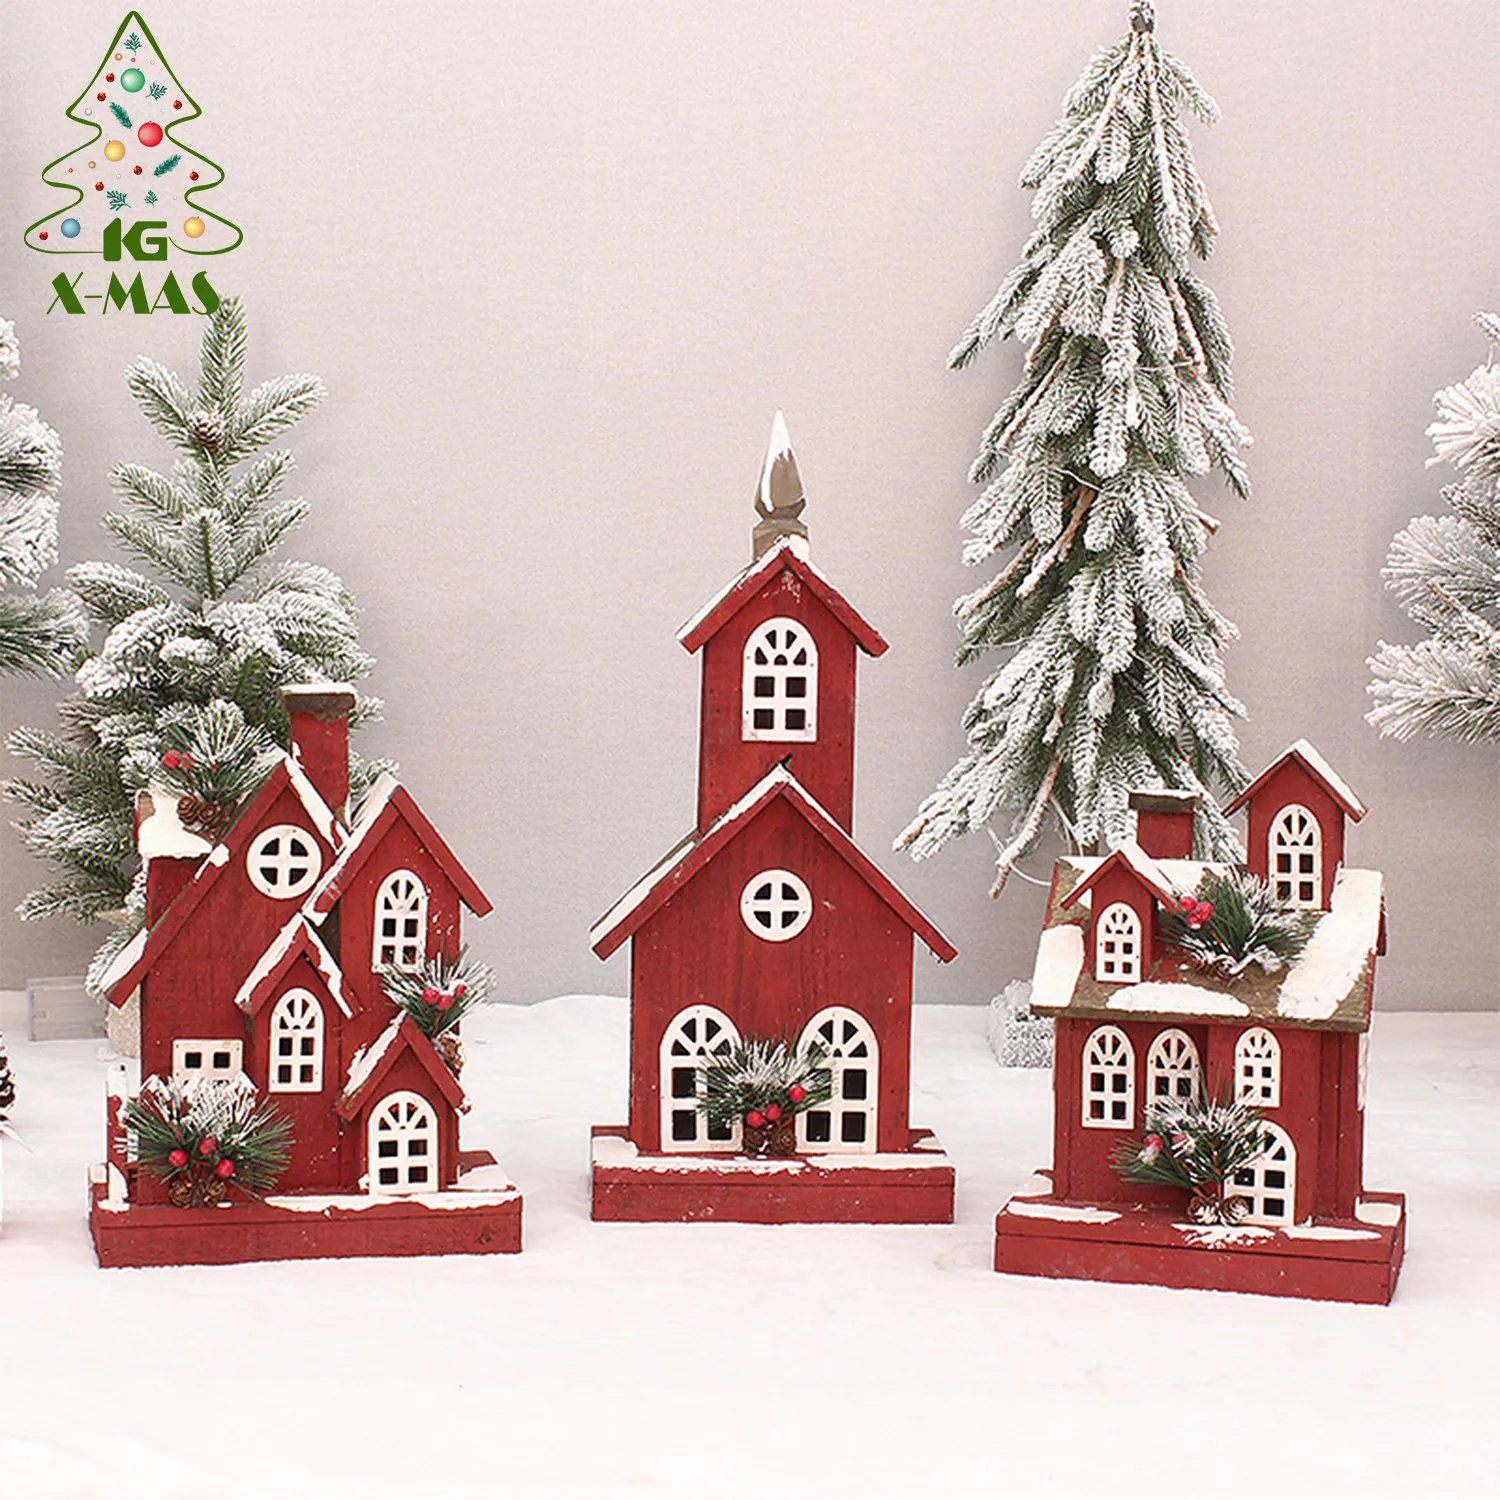 KG Weihnachts dekorationen Noel Navidad Natal Red Snowing Holz leuchtende Szene Zimmer Figur Haus Weihnachten Schnee dorf Ornamente